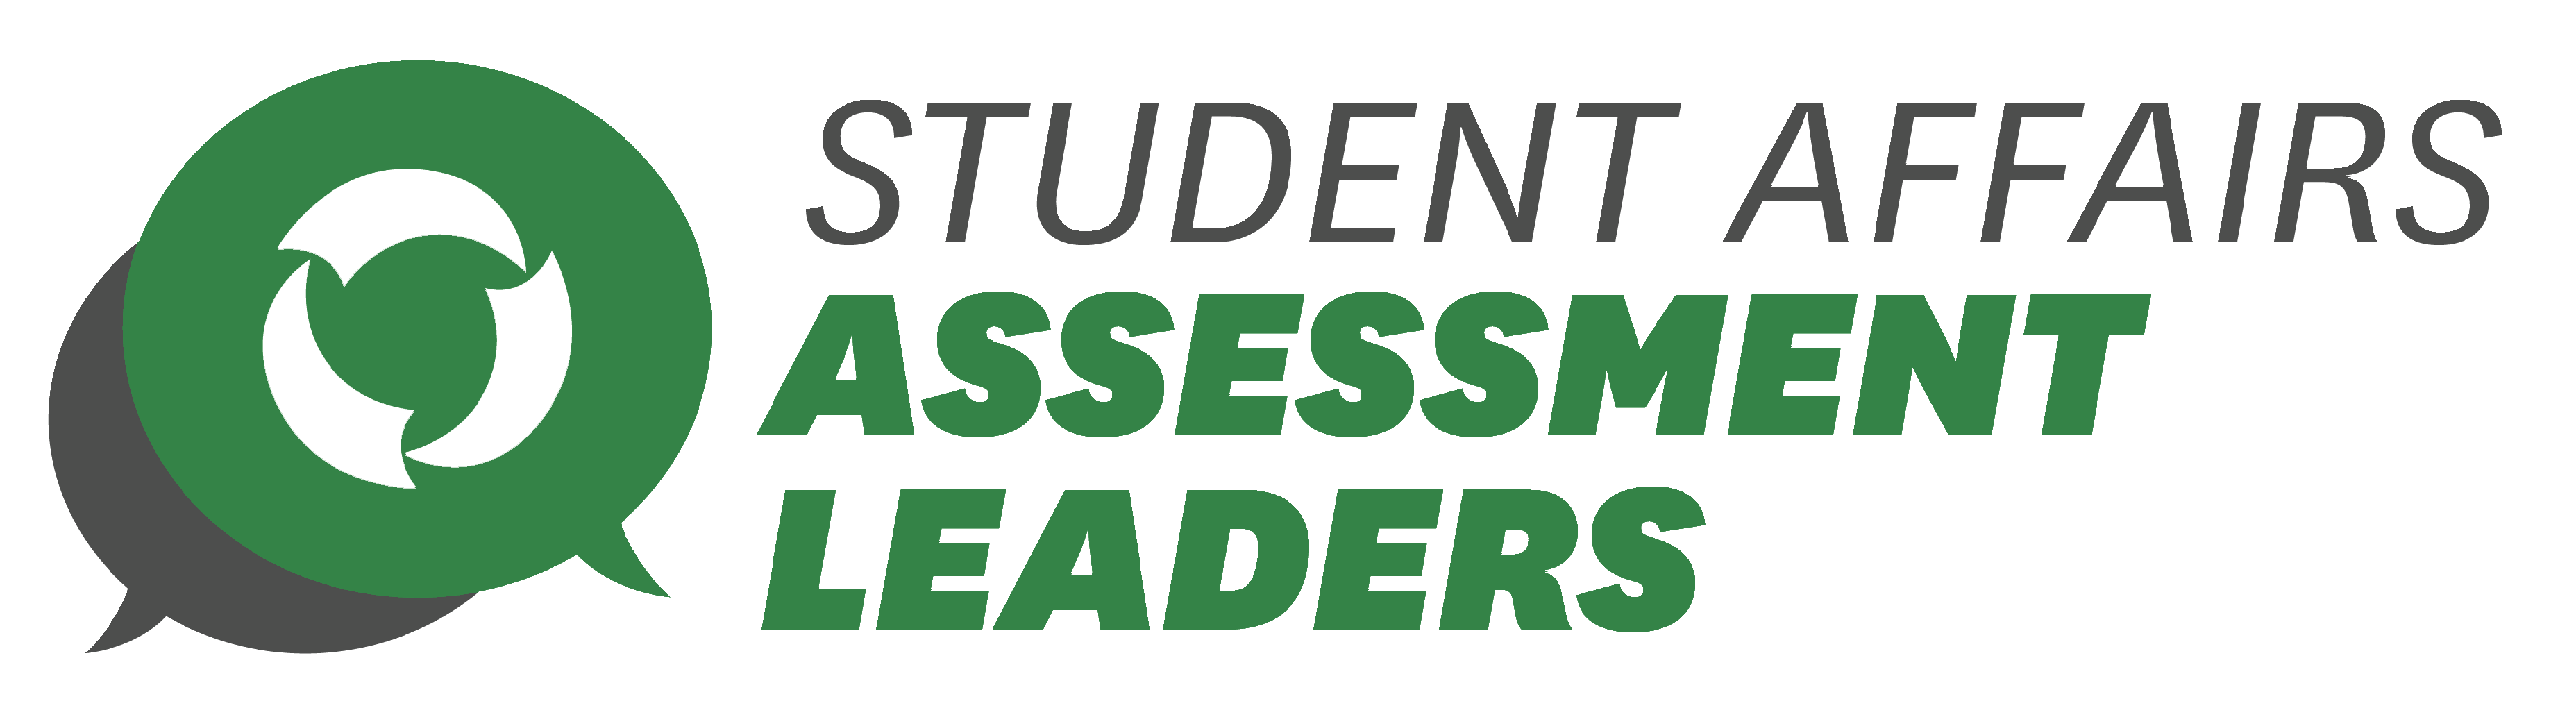 Assessment leaders logo